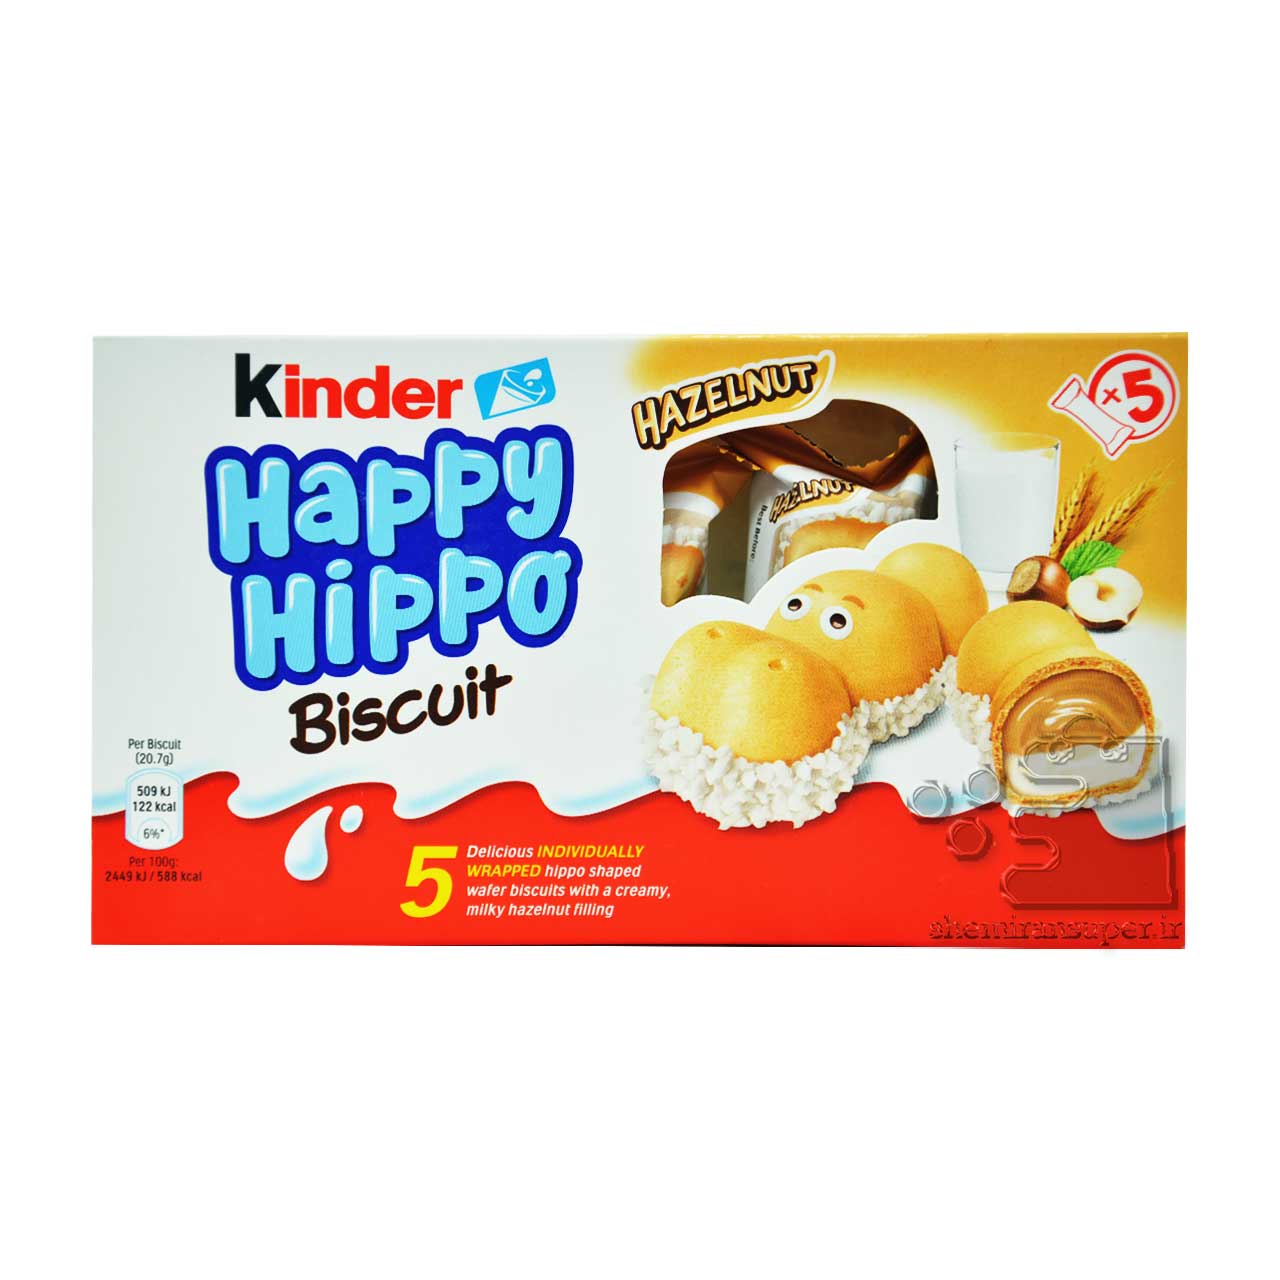 بیسکوییت با مغز کرم شیری و کرم کاکائو 5 تایی هپی هیپو کیندر Kinder Happy Hippo